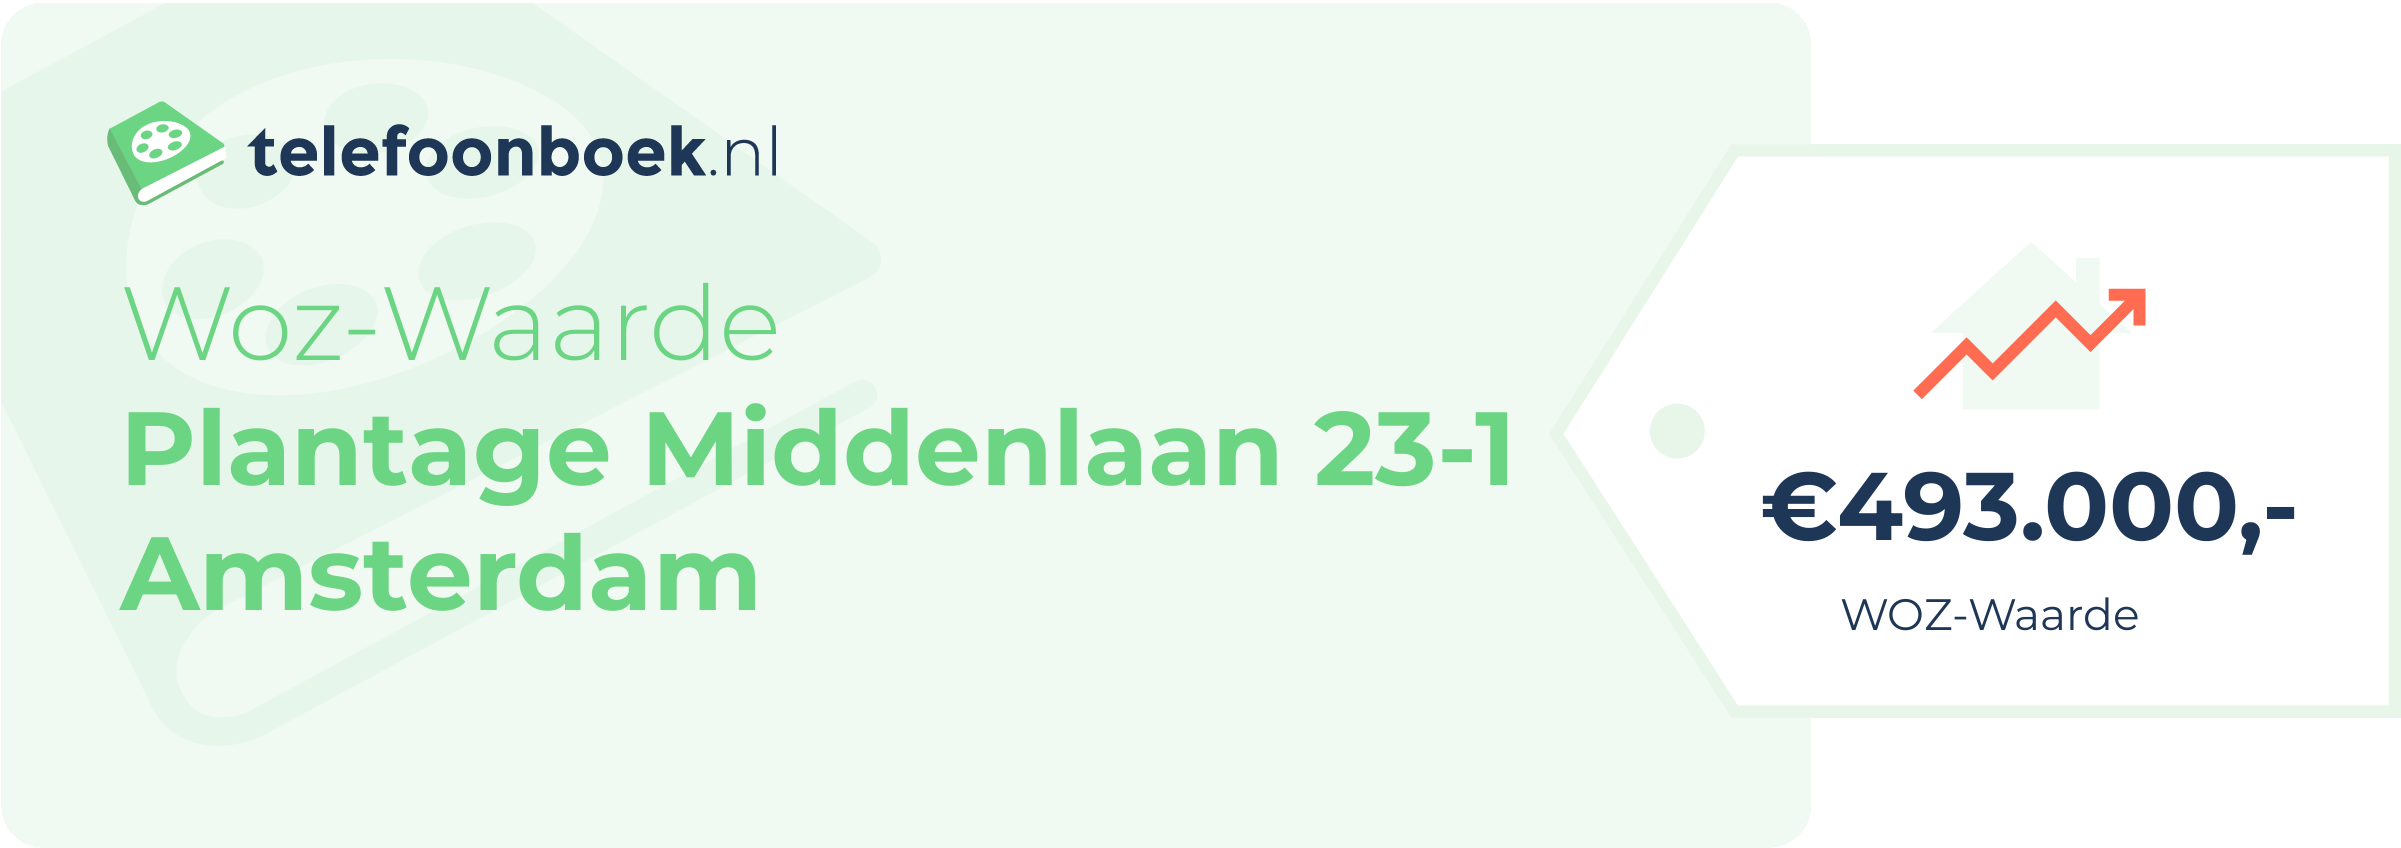 WOZ-waarde Plantage Middenlaan 23-1 Amsterdam